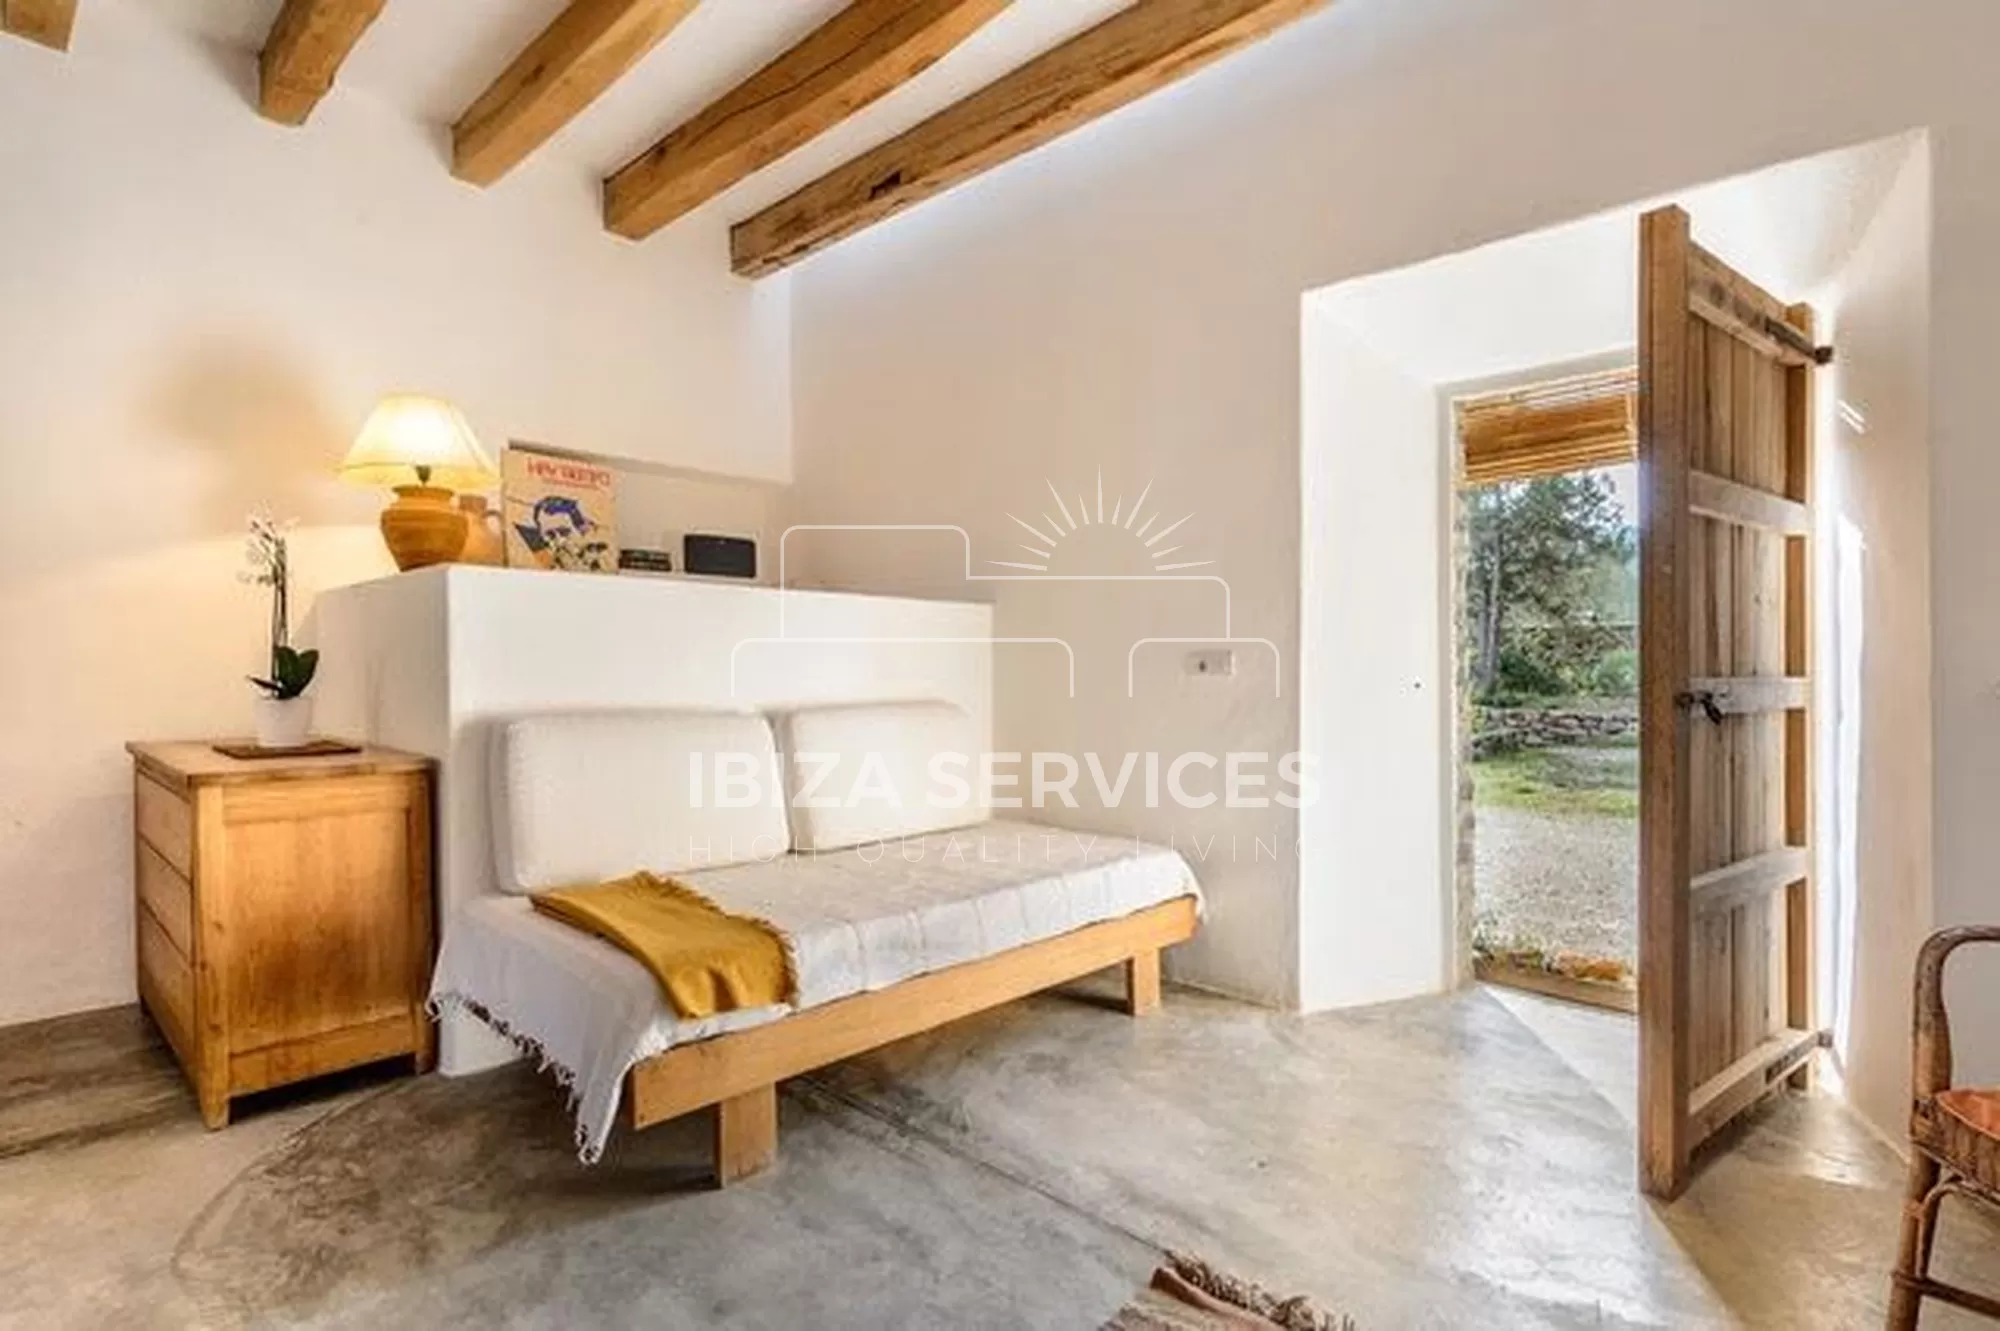 Betoverende finca met 2 slaapkamers beschikbaar voor vakantieverhuur in San Rafael.